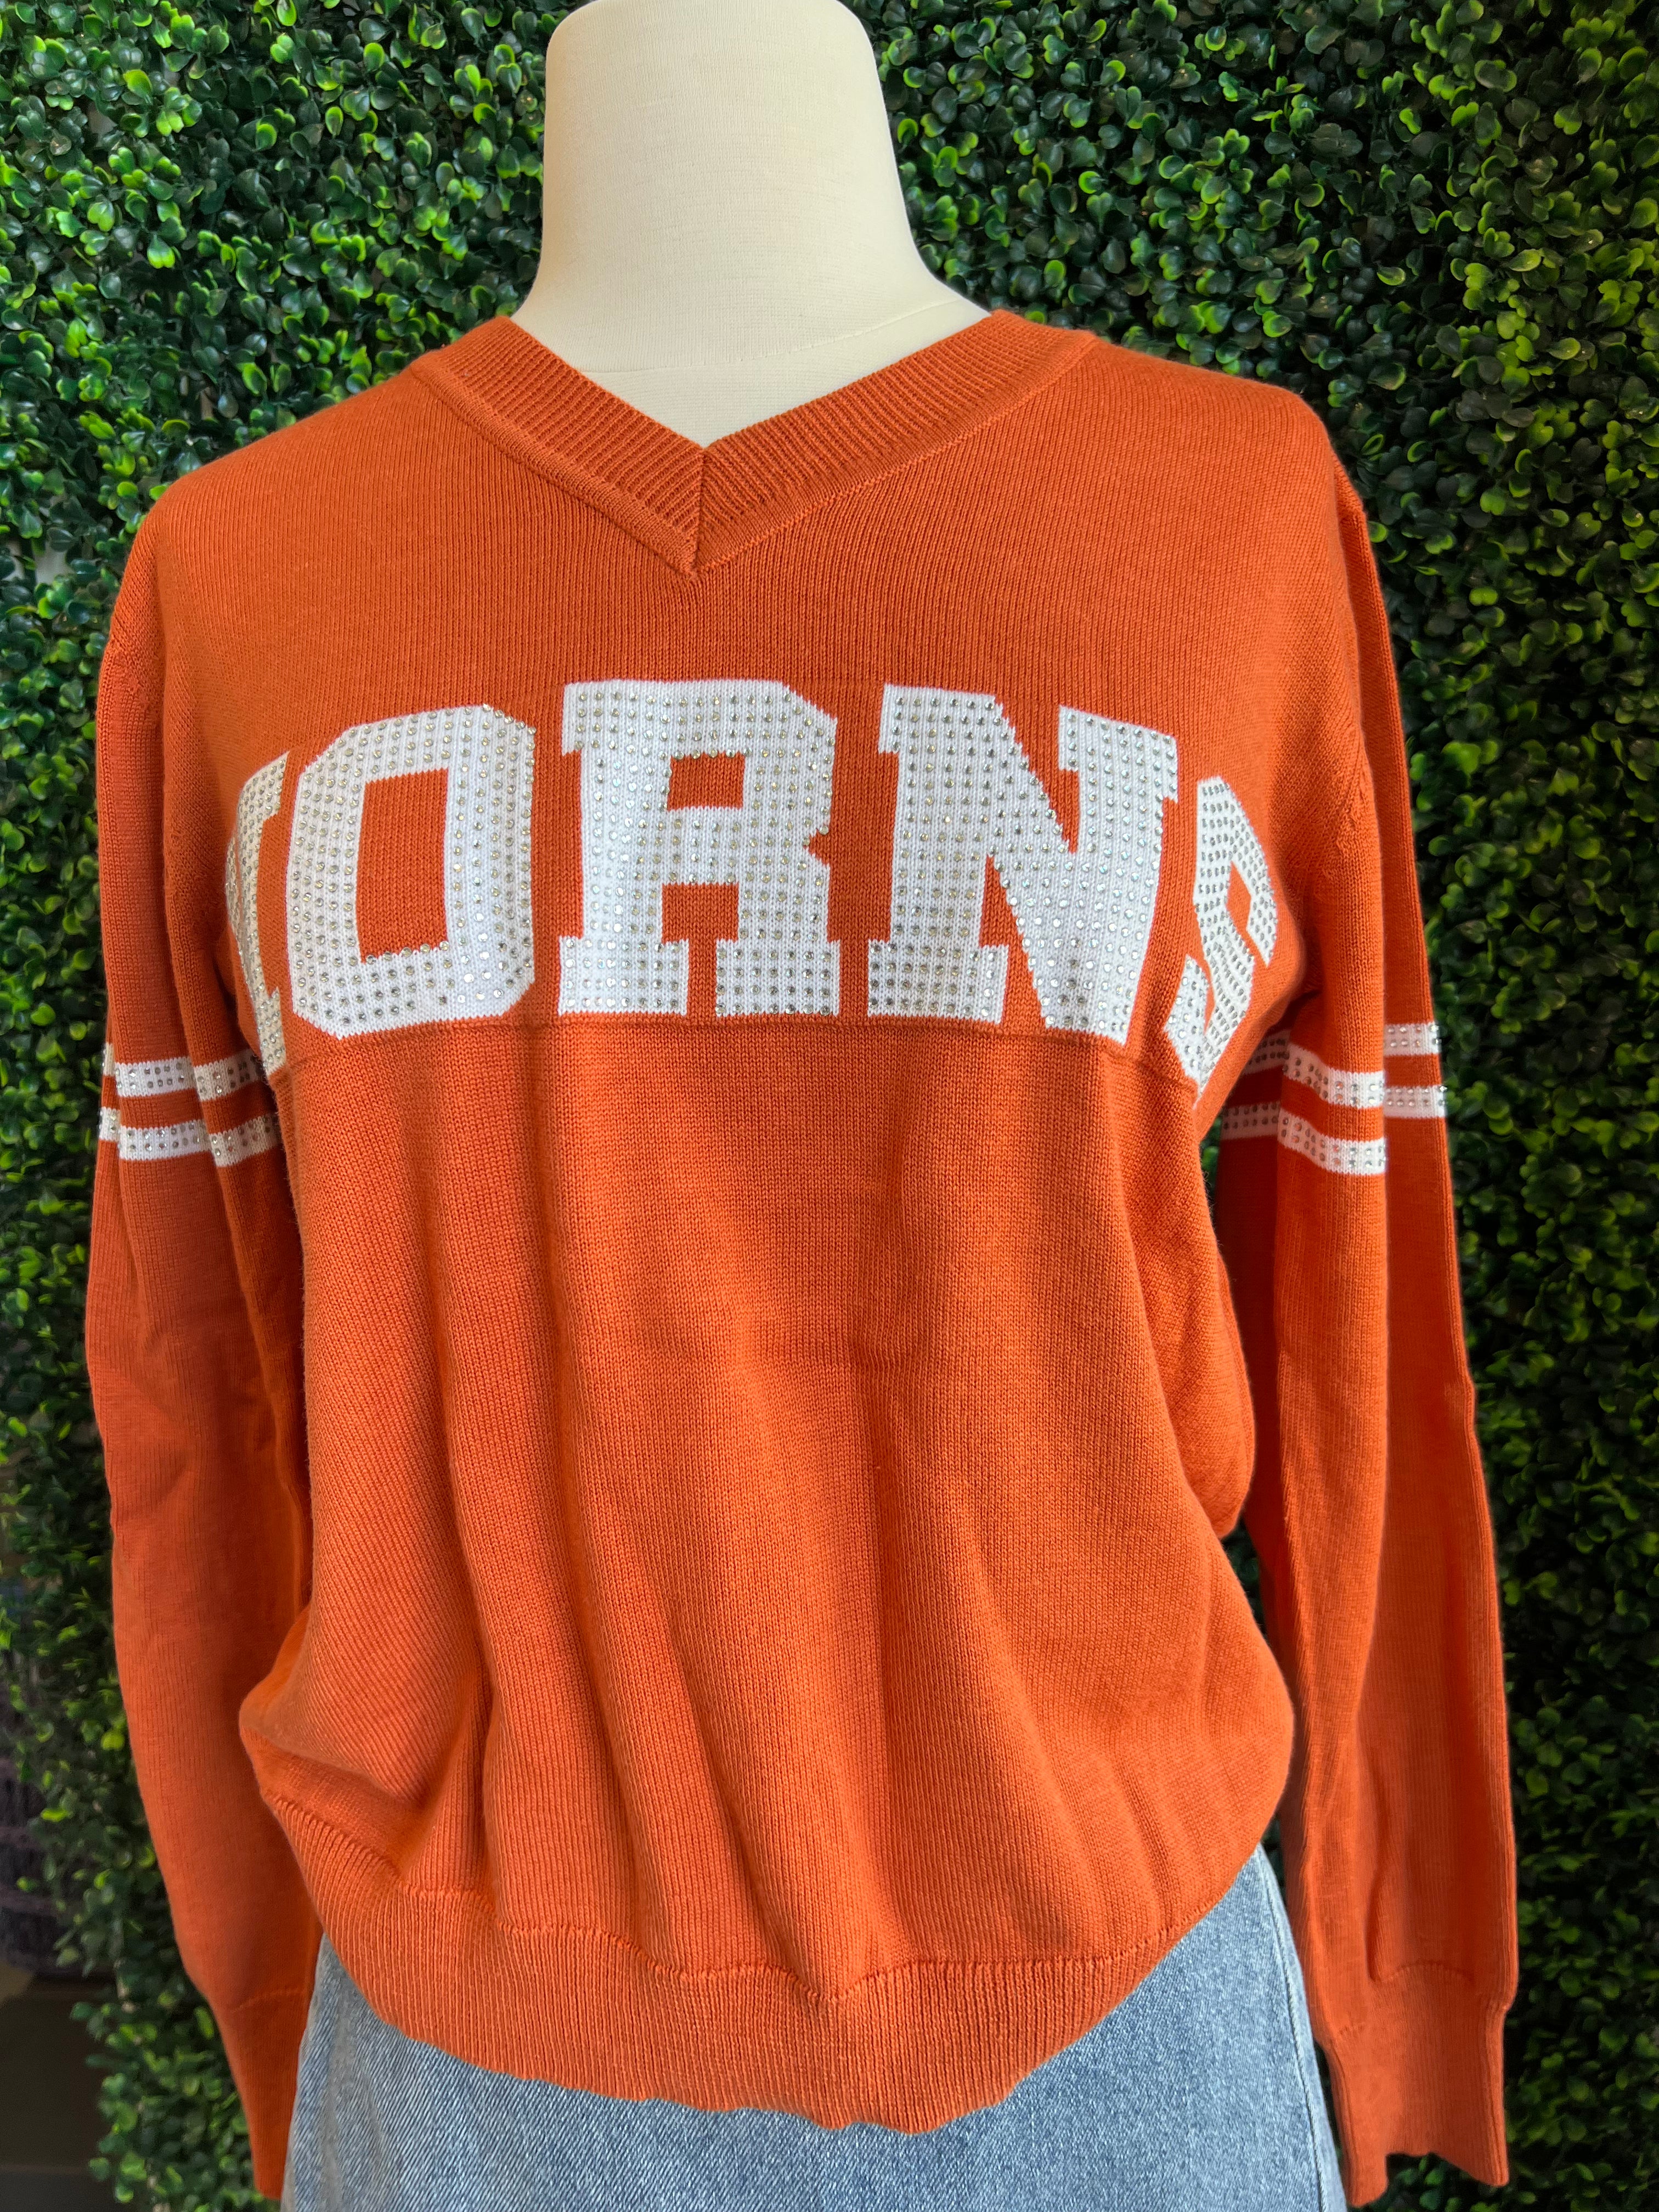 Horns Jersey Sweater